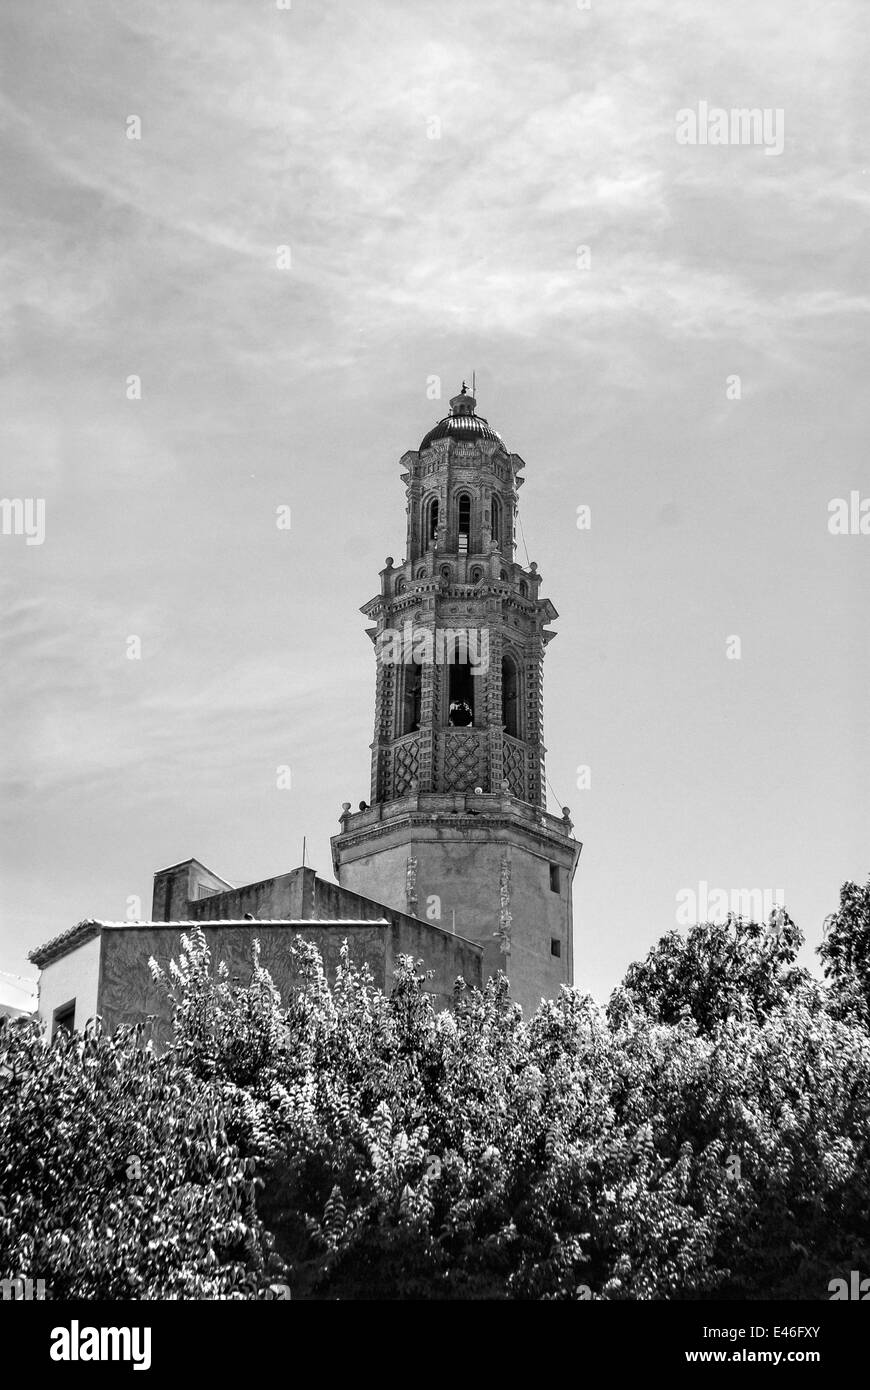 La Alcudia torre campanaria in stile Mudejar campanile si trova nella regione di Jerica di Valencia Spagna Foto Stock